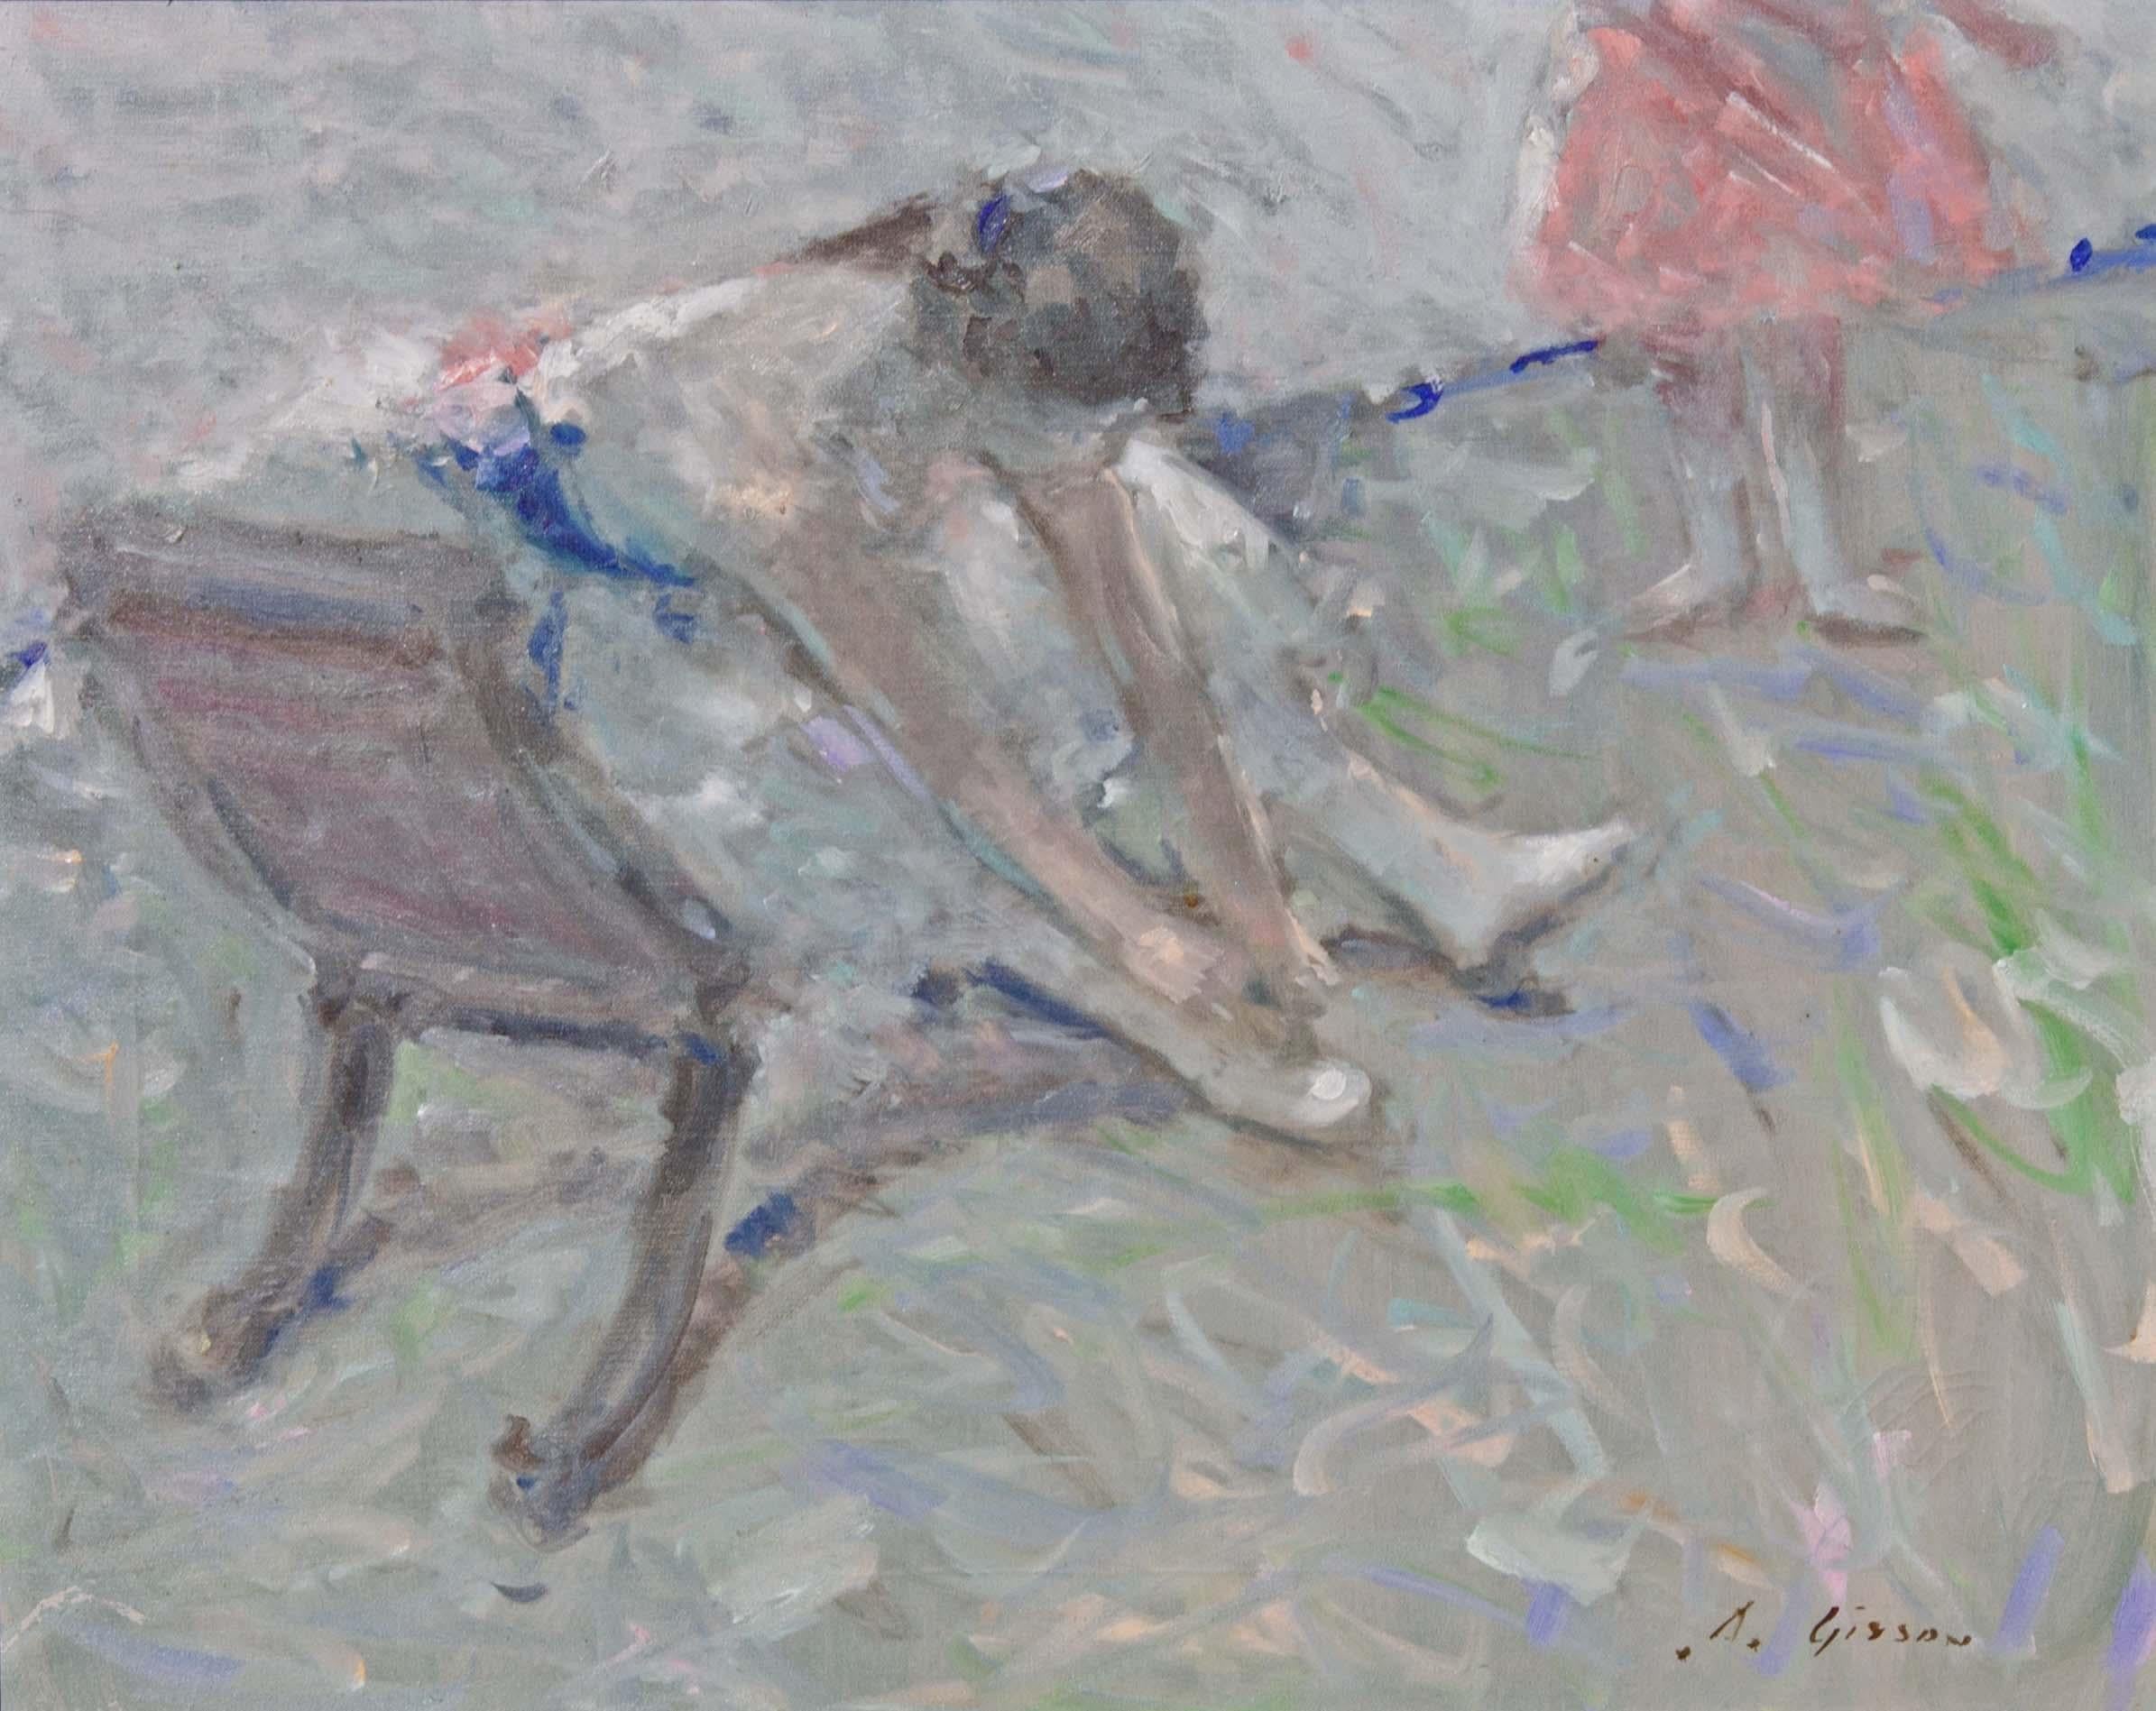 Impressionistisches Gemälde „Ballerina“ von Andre Gisson  – Painting von André Gisson